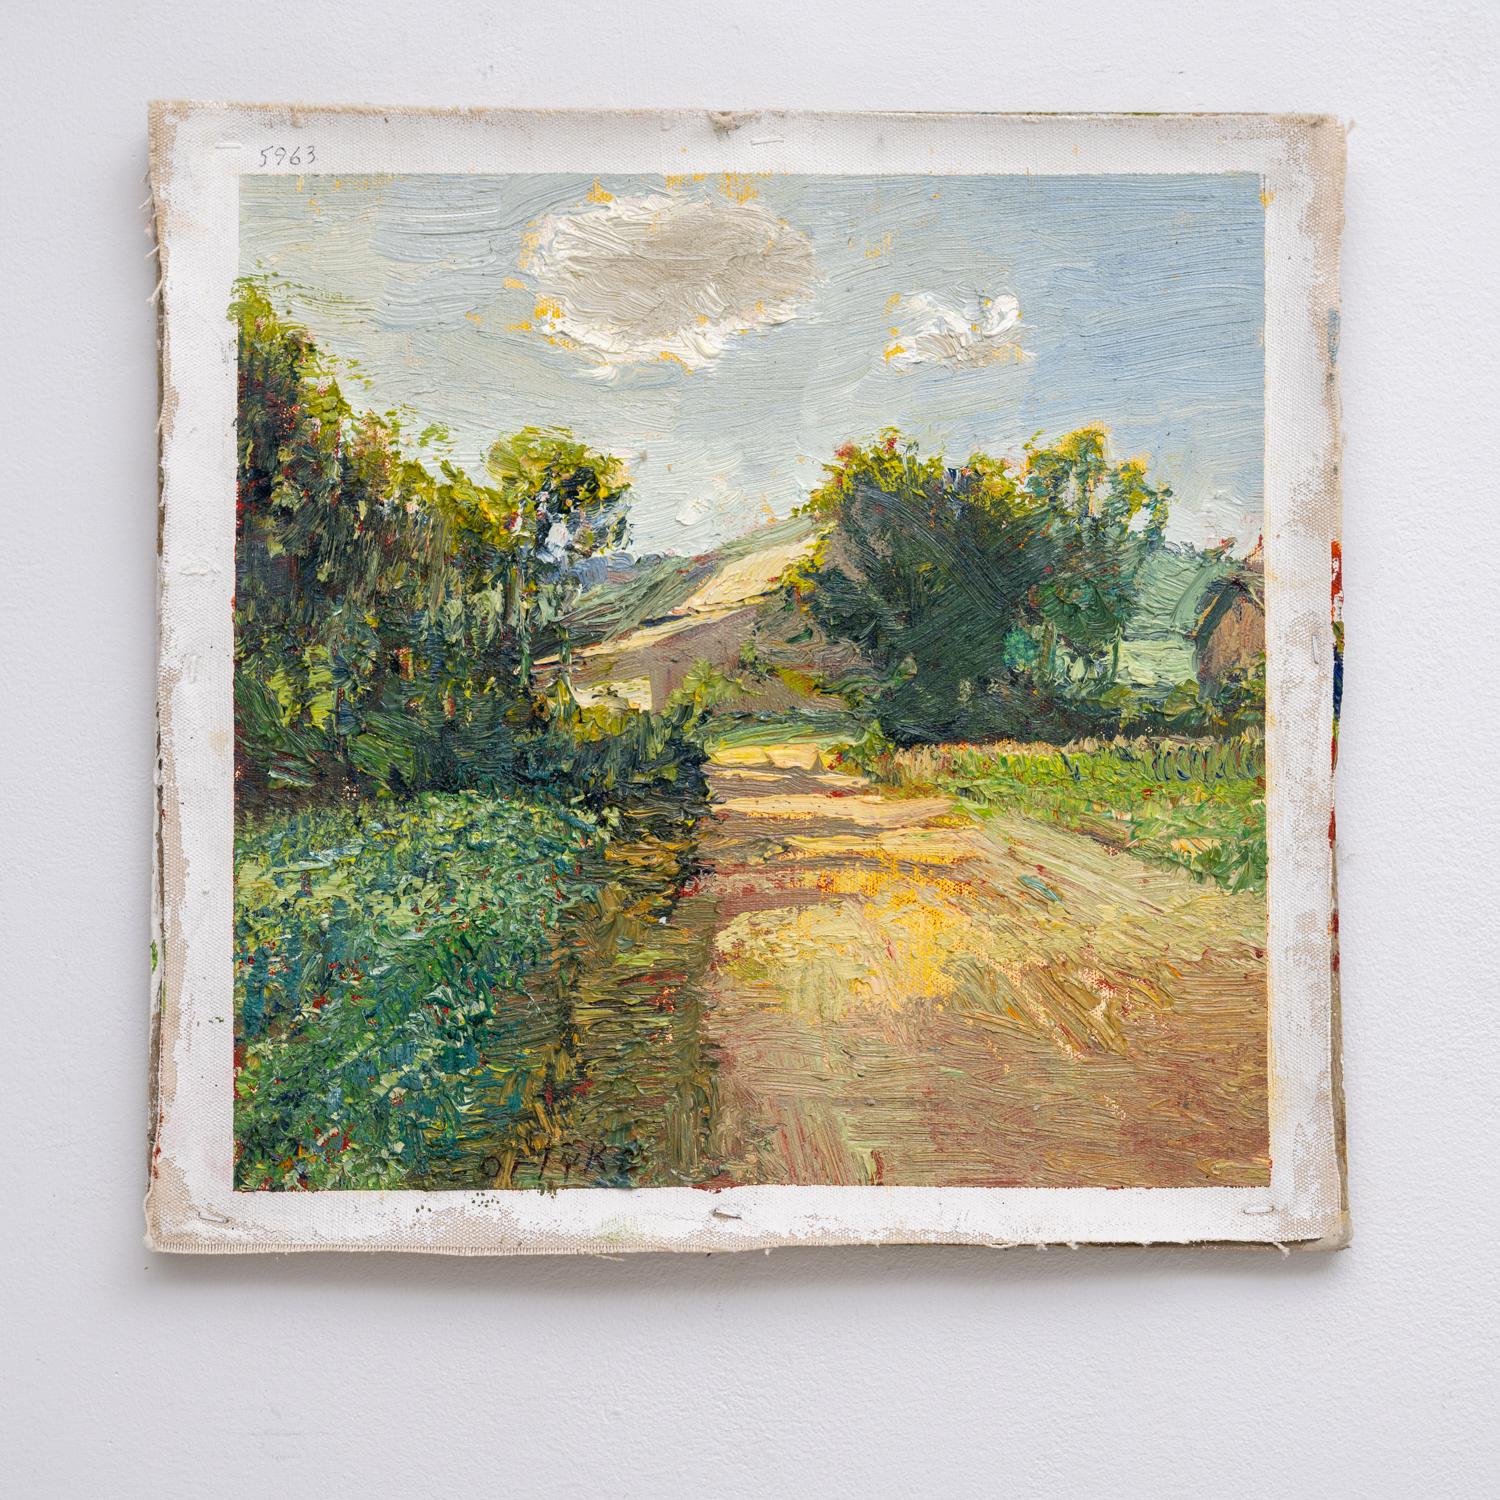 Impressionistisches Landschaftsgemälde auf Leinen, das einen von der Sonne beschienenen Feldweg zeigt, der zu einer Scheune führt
#Nr. 5963 Kartoffelscheune, 2022, gemalt von Harry Orlyk
Öl auf Leinen, so wie es ist, zum Aufhängen 
14 x 14,5